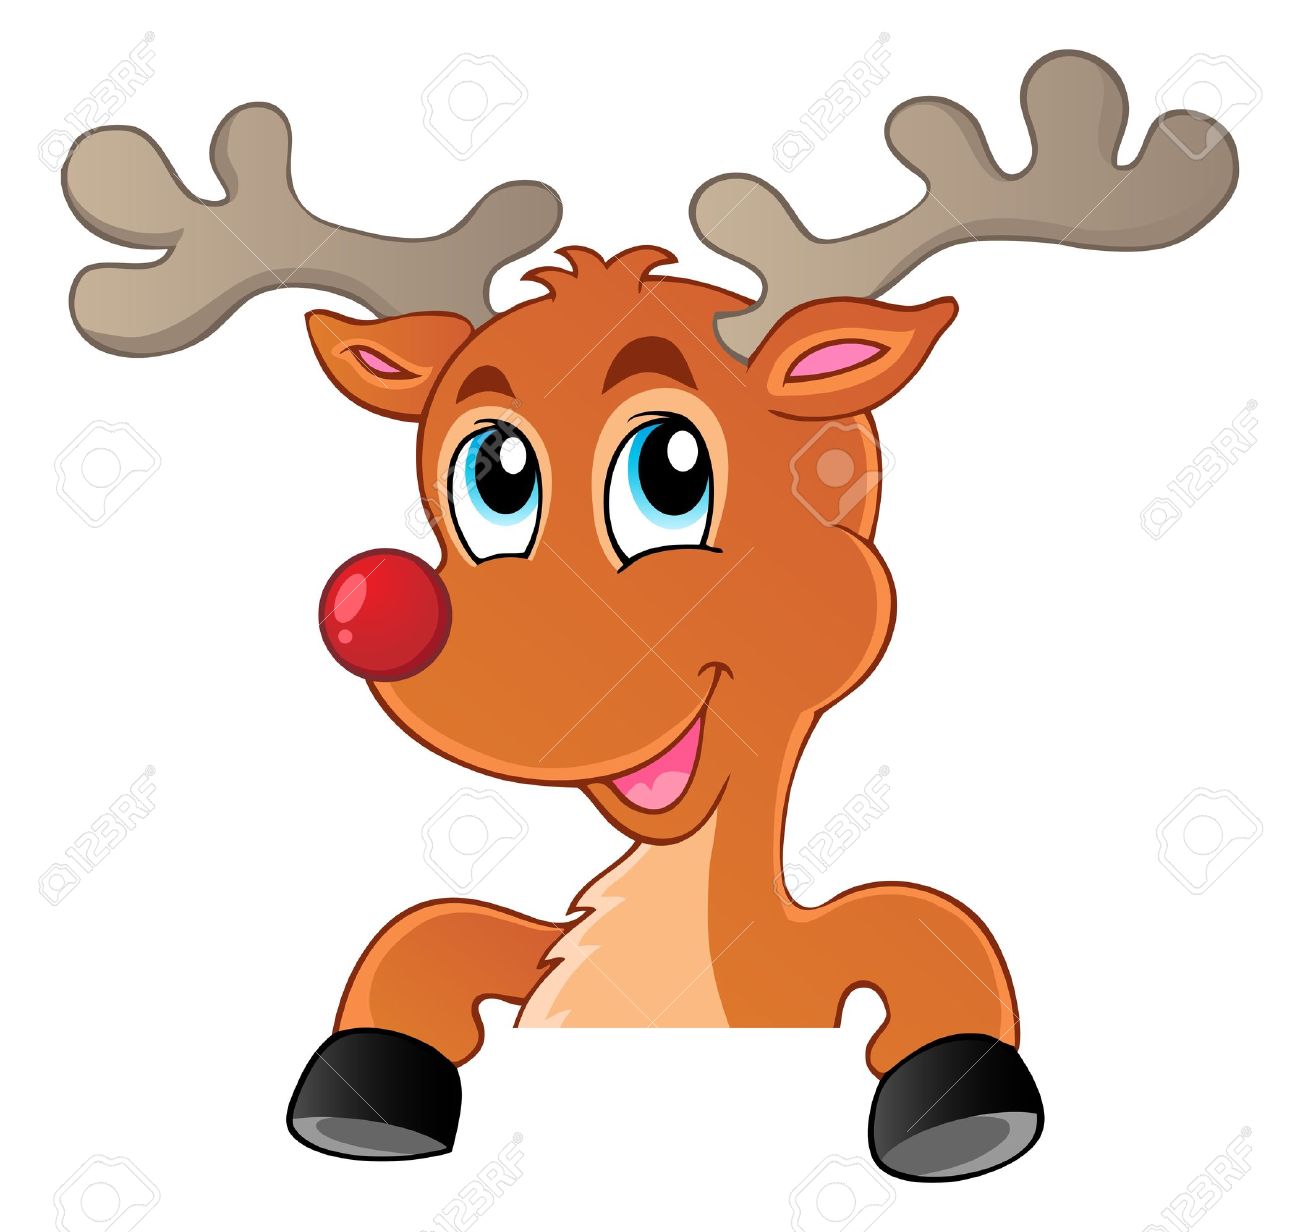 Reindeer clipart #13, Download drawings